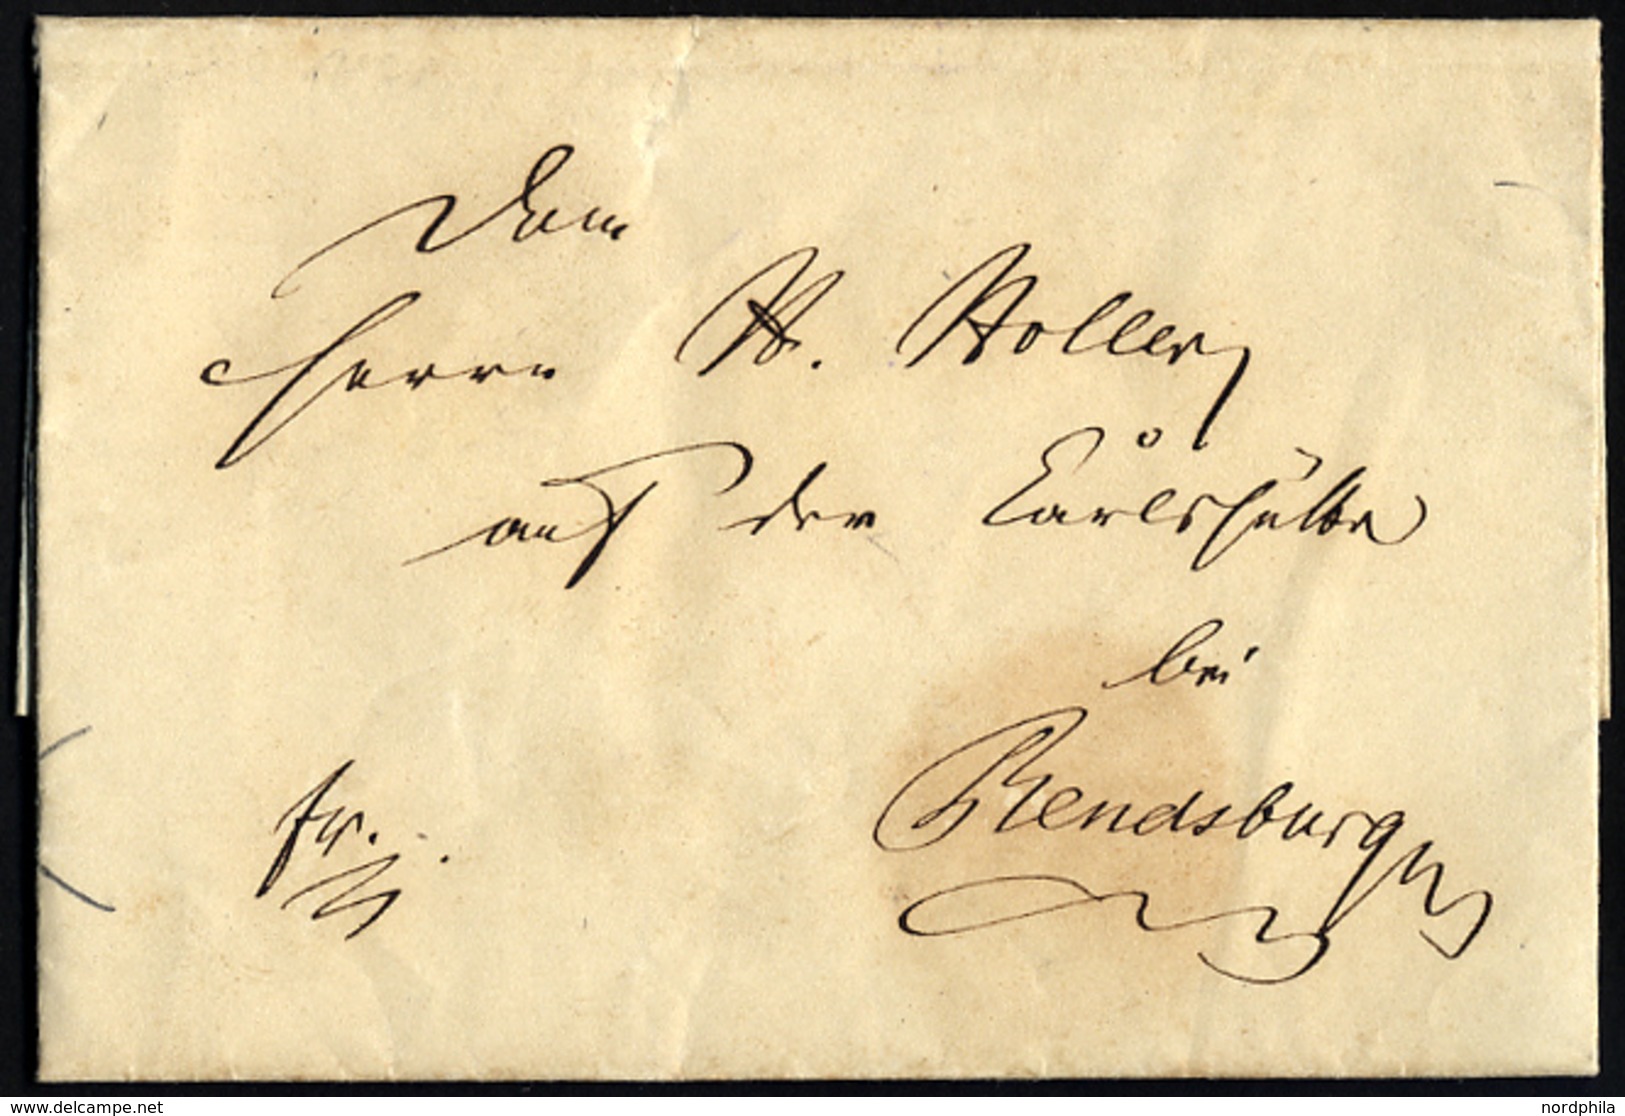 SCHLESWIG-HOLSTEIN 1850, Brief Aus Hohn, Prachtbrief Nach Rendsburg - Precursores